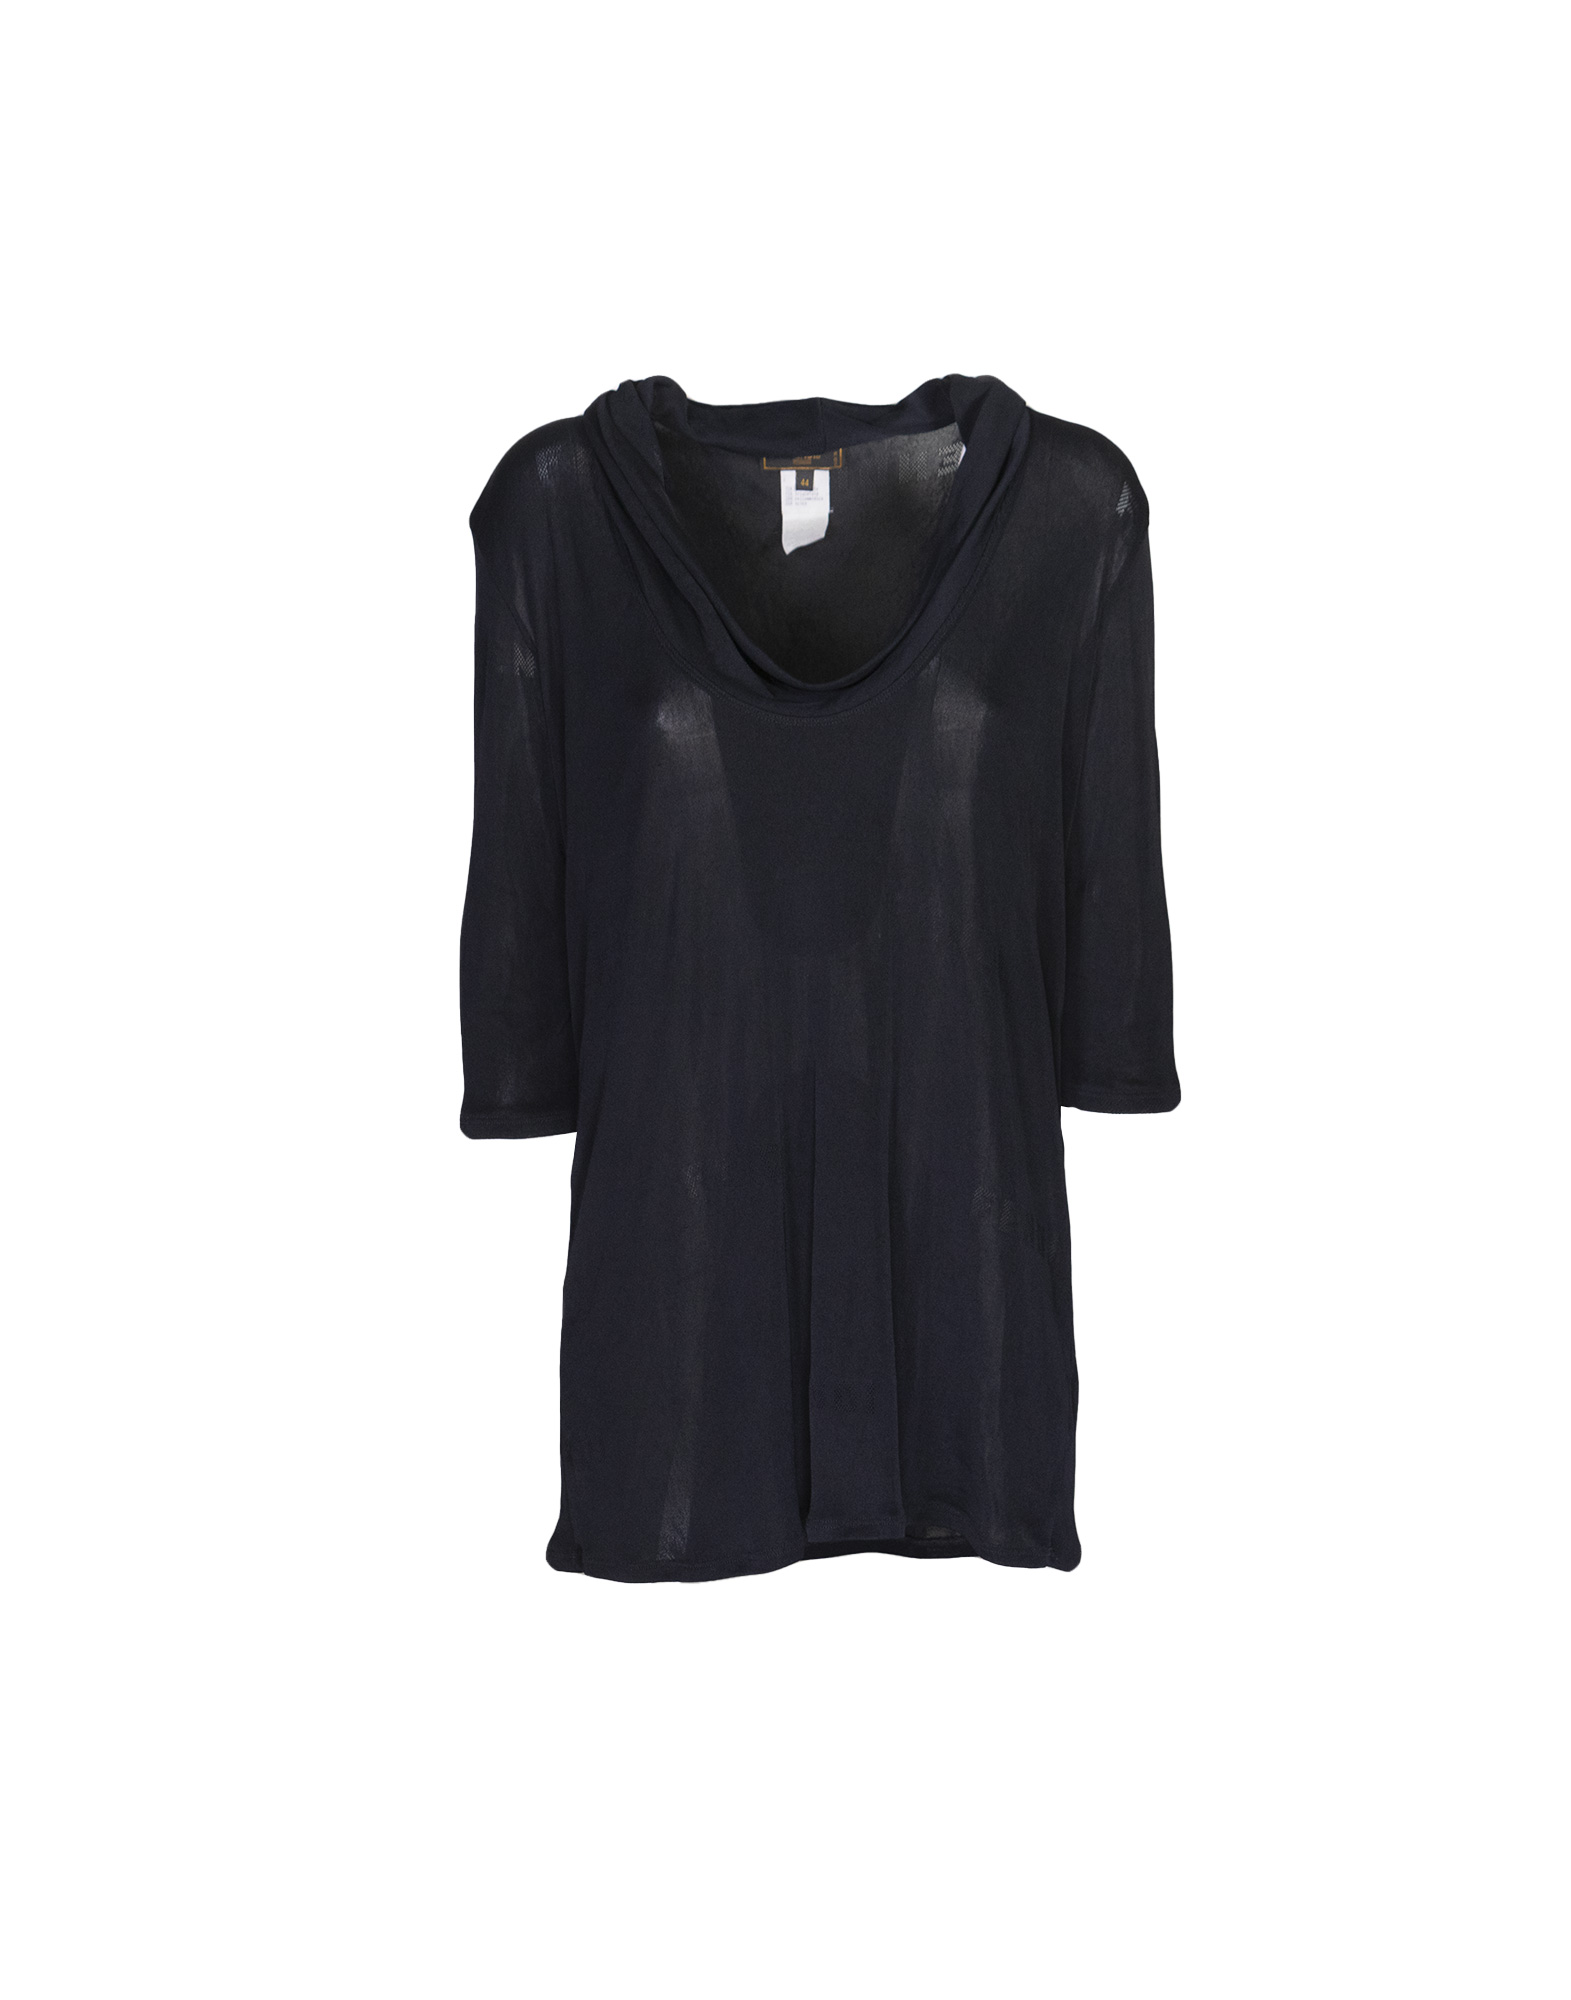 Fendi - Black triacetate t-shirt